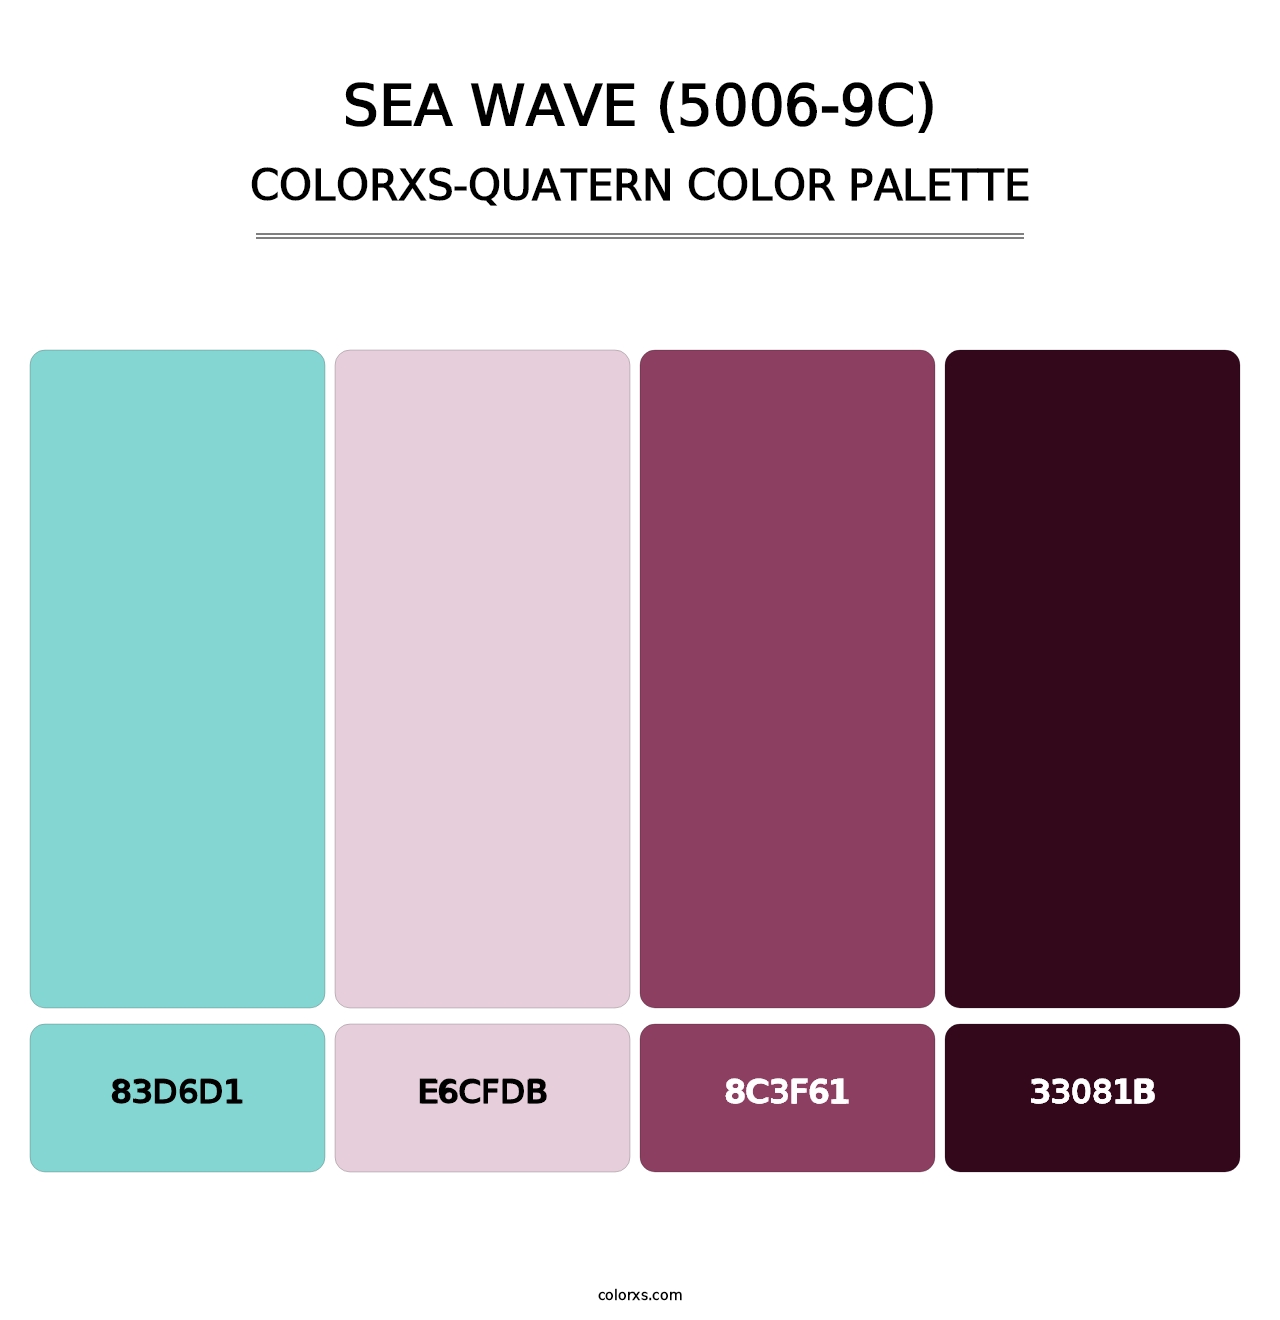 Sea Wave (5006-9C) - Colorxs Quatern Palette